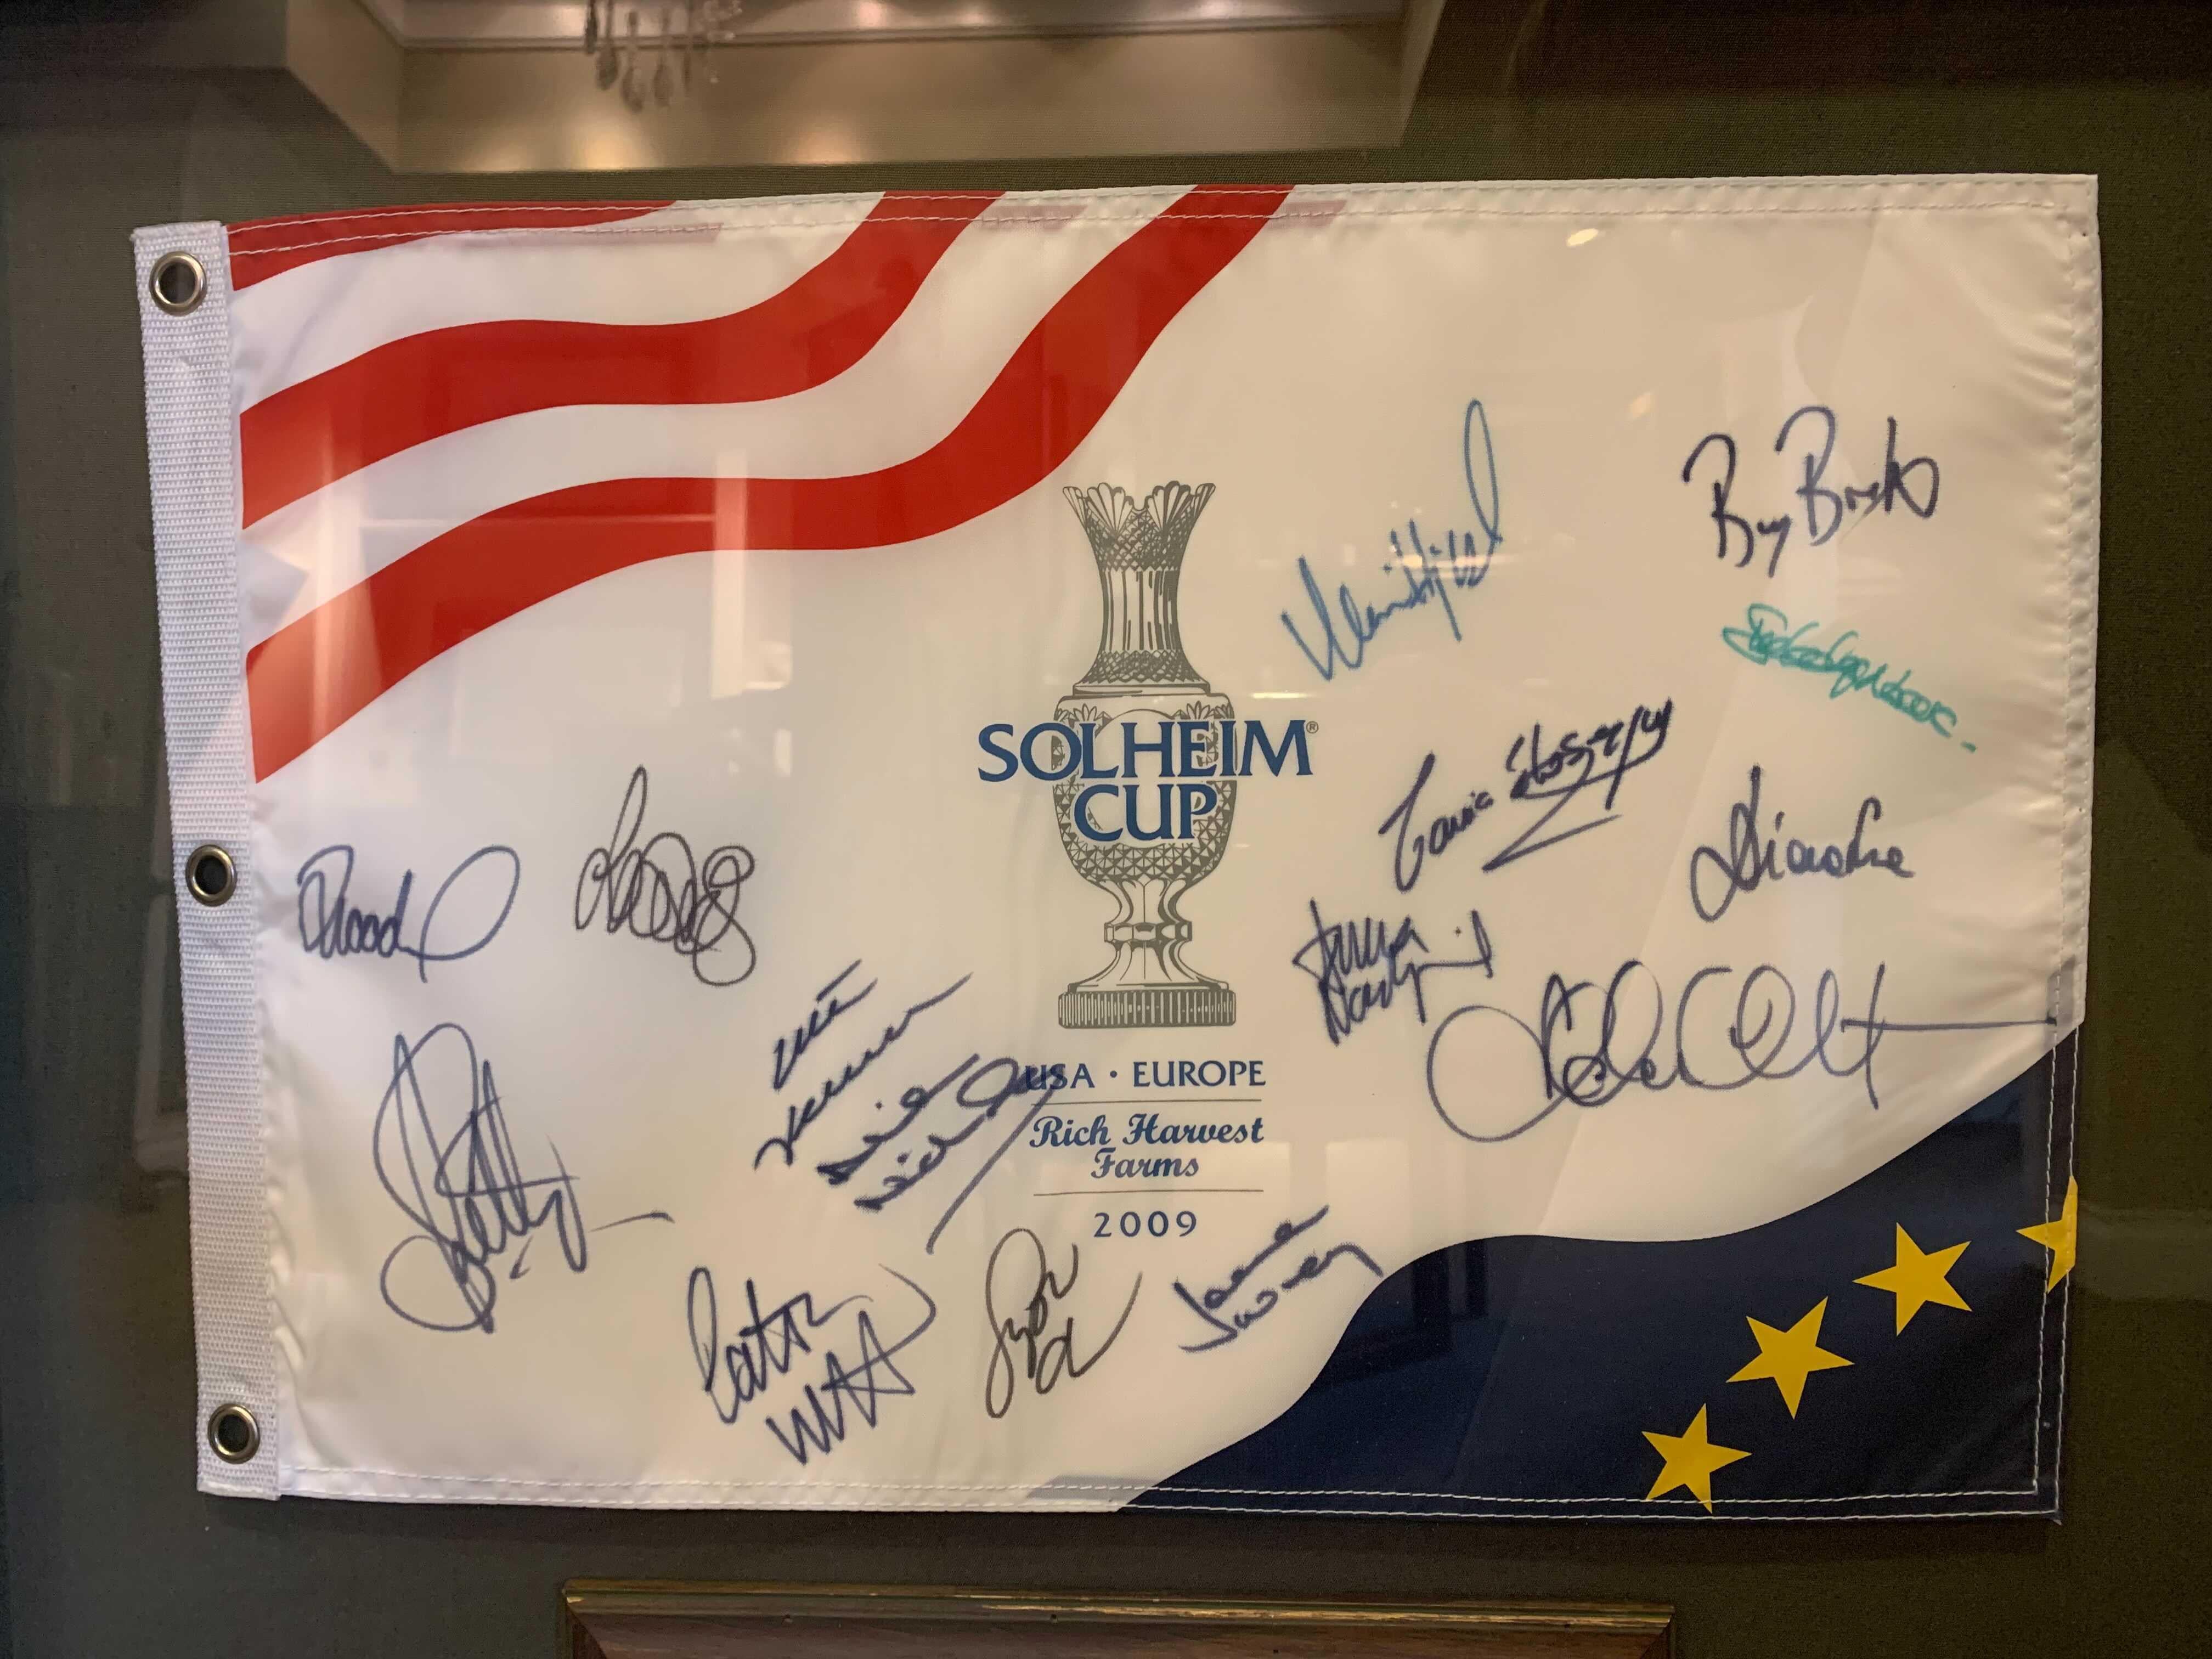 Solheim Cup Matches U.S. & European Team Signiertes Foto & Flagge, USA 16 vs. EUROPE 12, ca. 2009

Präsentiert wird eine signierte Collage, die die Golferinnen der US-amerikanischen und europäischen Solheim-Cup-Teams 2009 würdigt. Die 11. Solheim